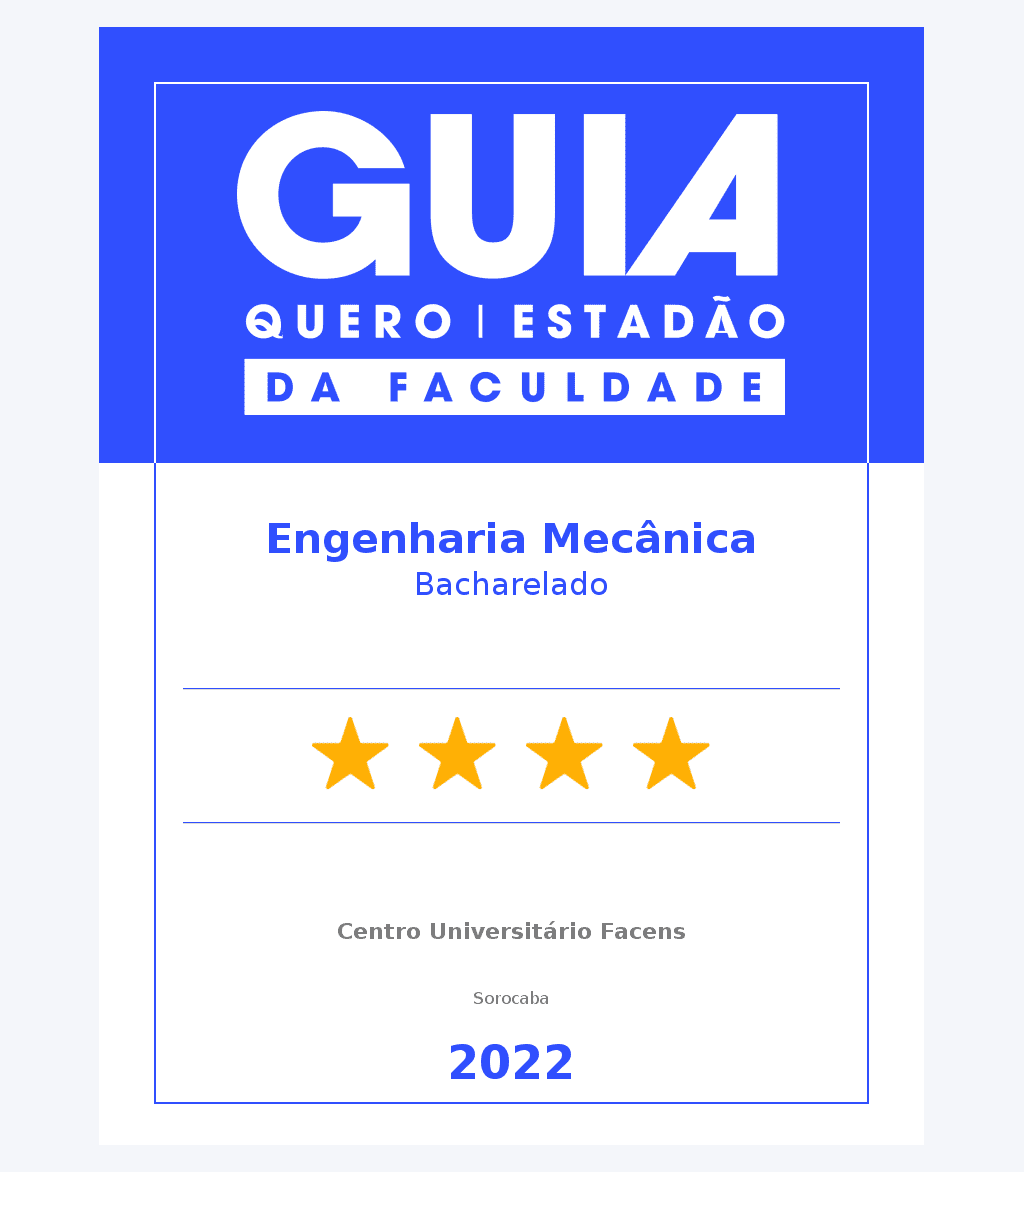 Engenharia Mecânica - 4 Estrelas Guia do Estudante 2022